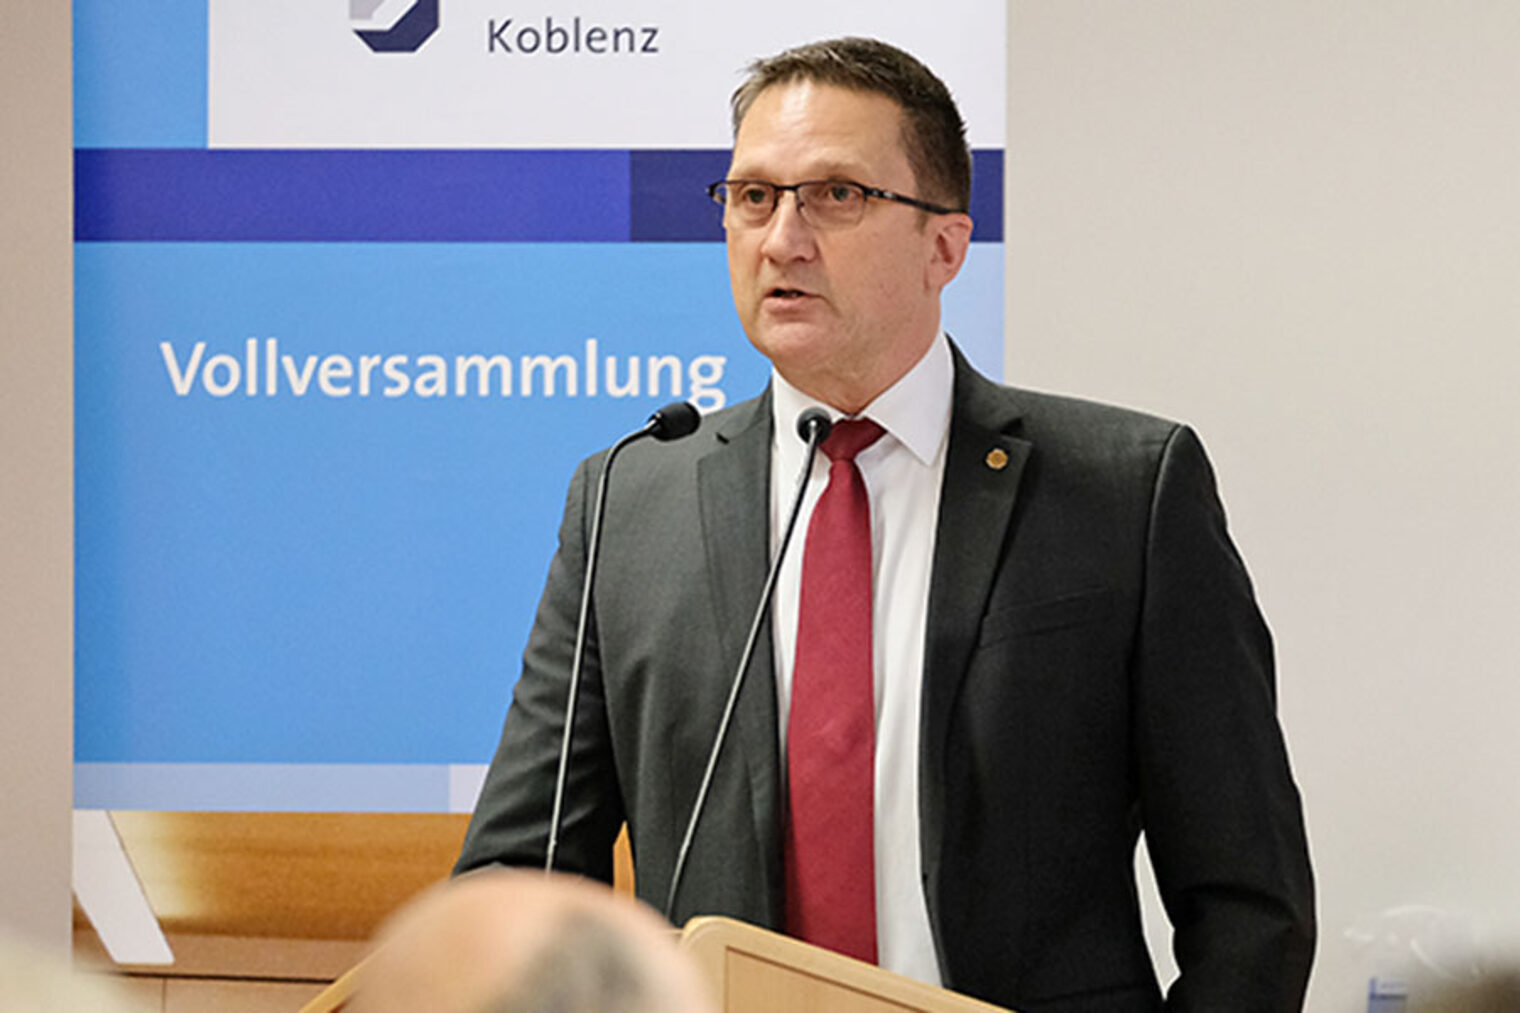 Spitzenhandwerk wählt: Koblenz auf Bundesebene stark vertreten